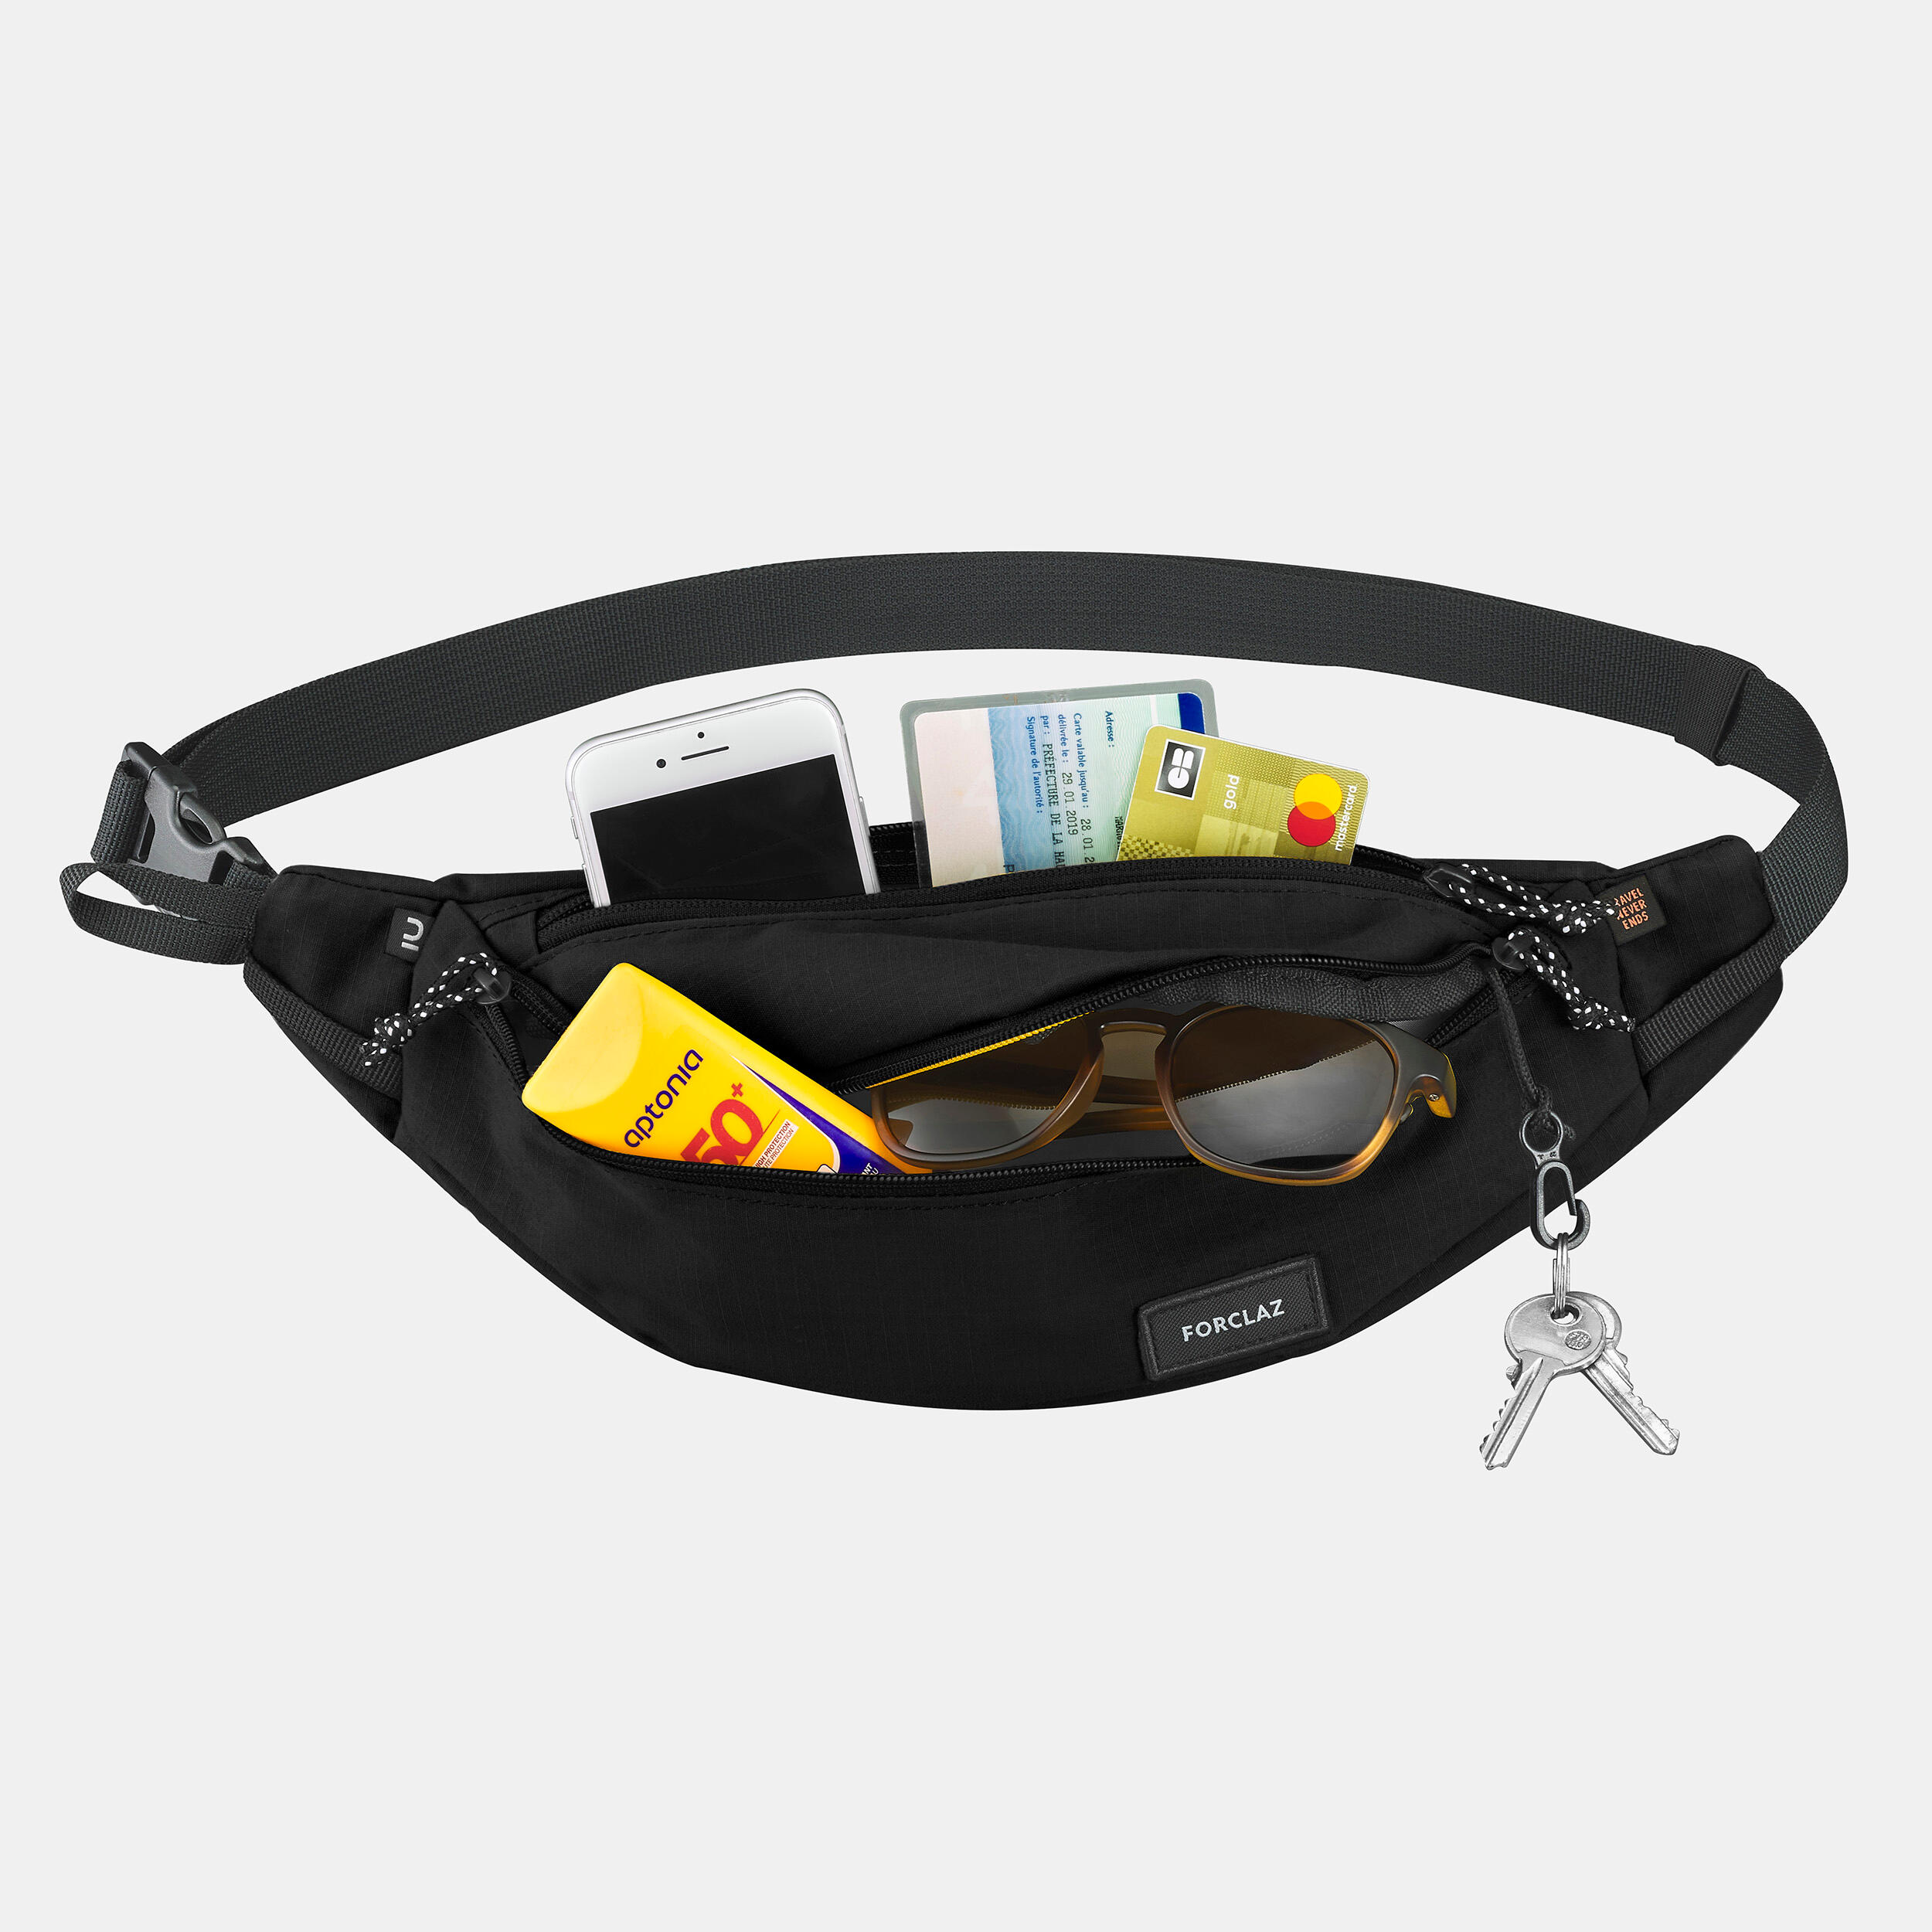 Hiking Belt Bag 2 L - Black